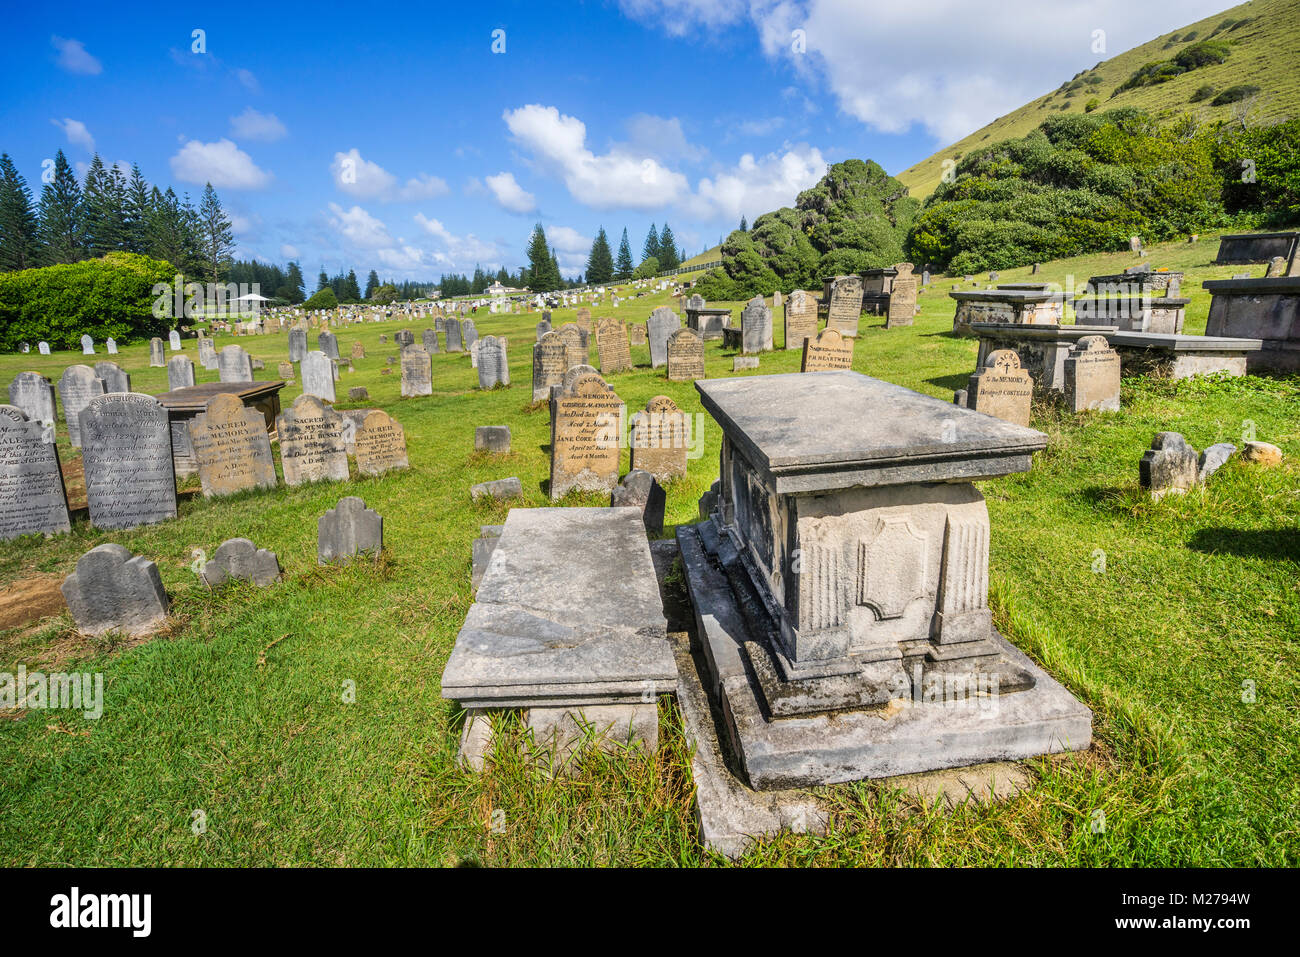 Isla Norfolk, territorio externo australiano, Kingston, la histórica Isla Norfolk cementerio contiene las tumbas de los convictos, soldados y Pitcairn Islan Foto de stock